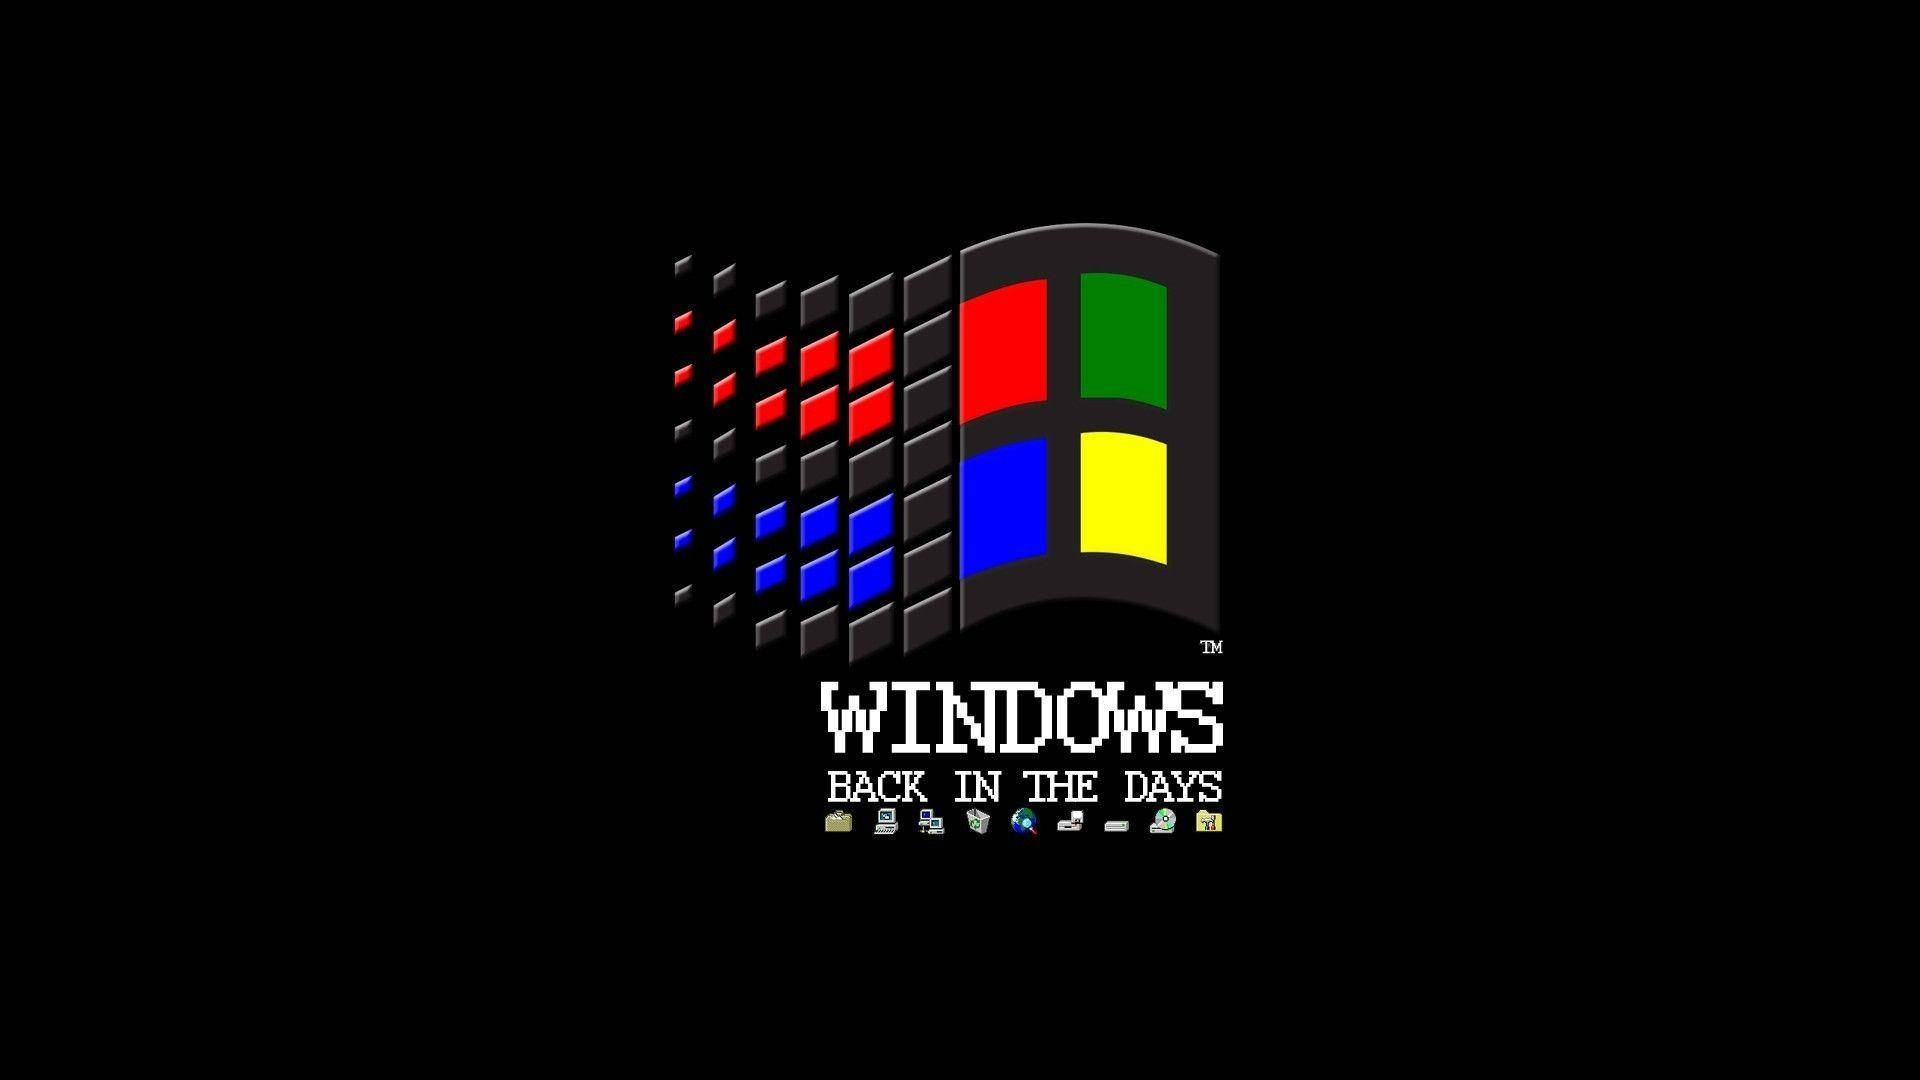 Ikonisktoperativsystem: Windows 98. Wallpaper